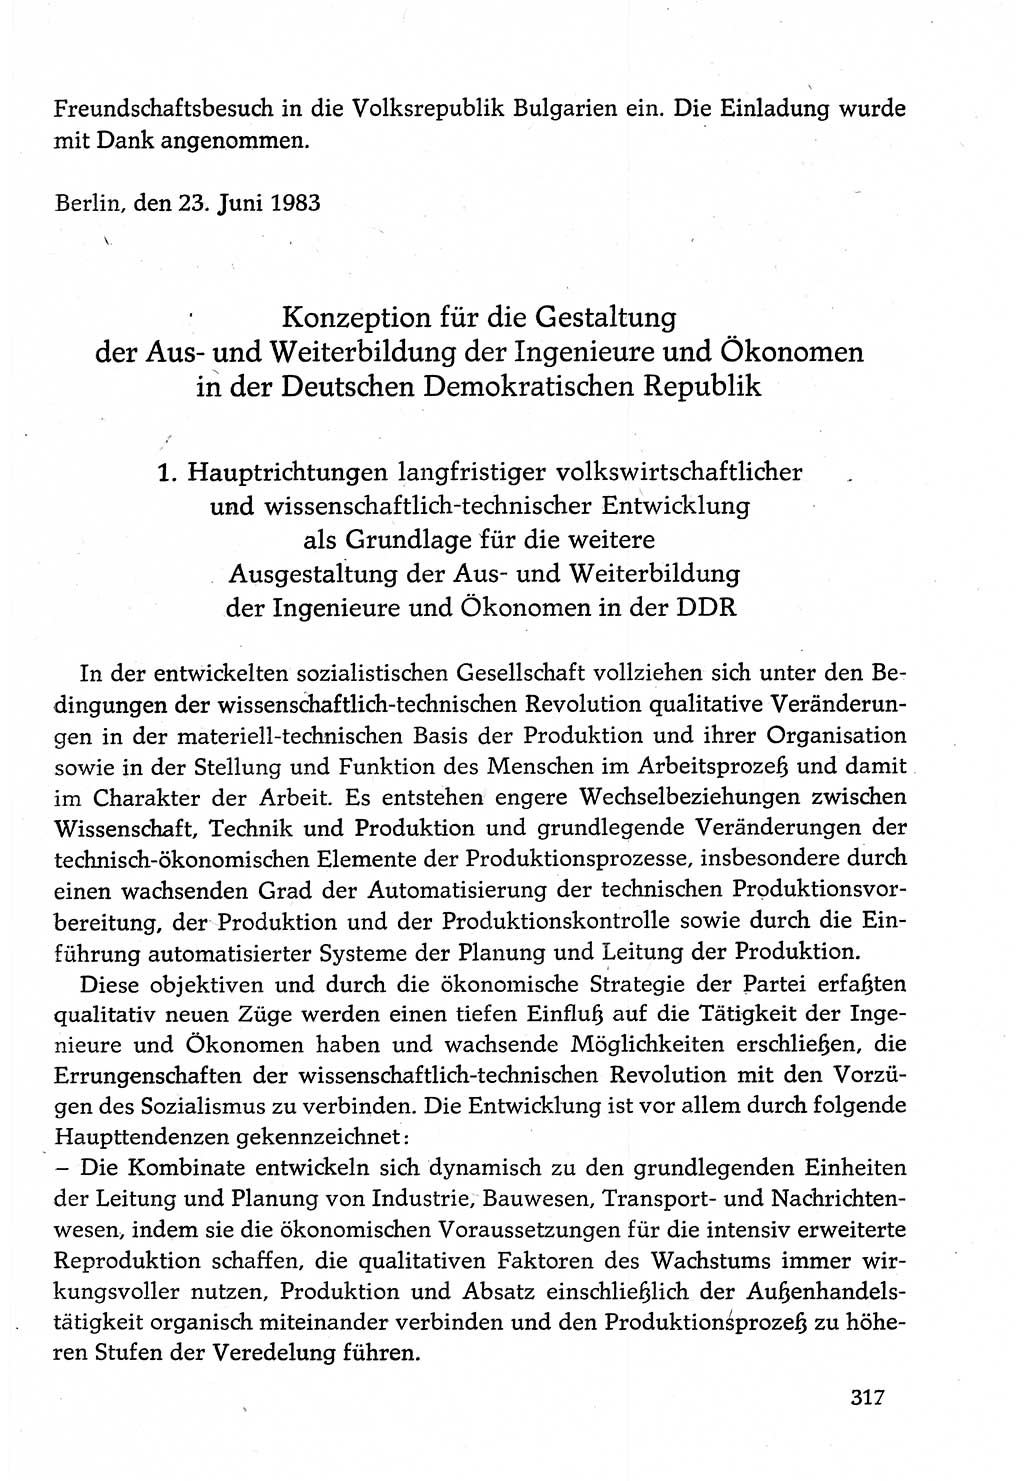 Dokumente der Sozialistischen Einheitspartei Deutschlands (SED) [Deutsche Demokratische Republik (DDR)] 1982-1983, Seite 317 (Dok. SED DDR 1982-1983, S. 317)